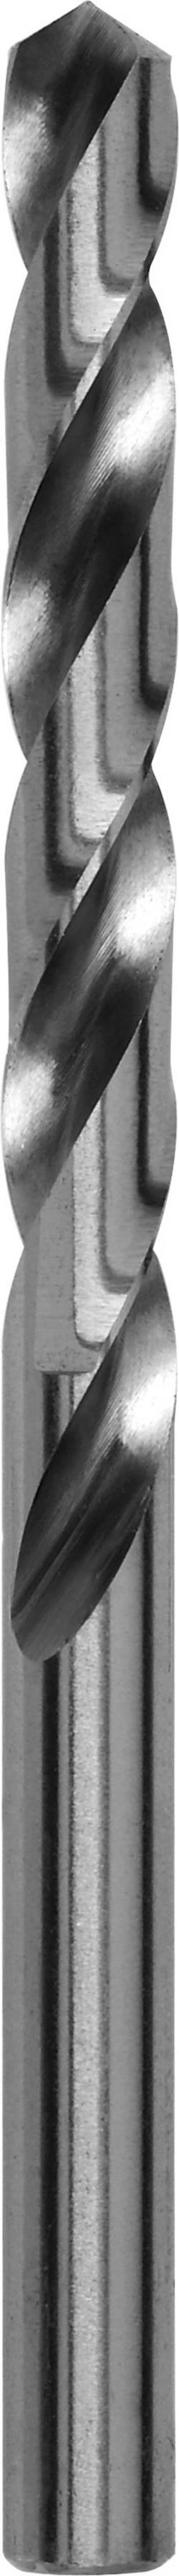 Kovový spirálový vrták Bosch Accessories 2609255041, 4 mm, 75 mm, HSS, 2 ks